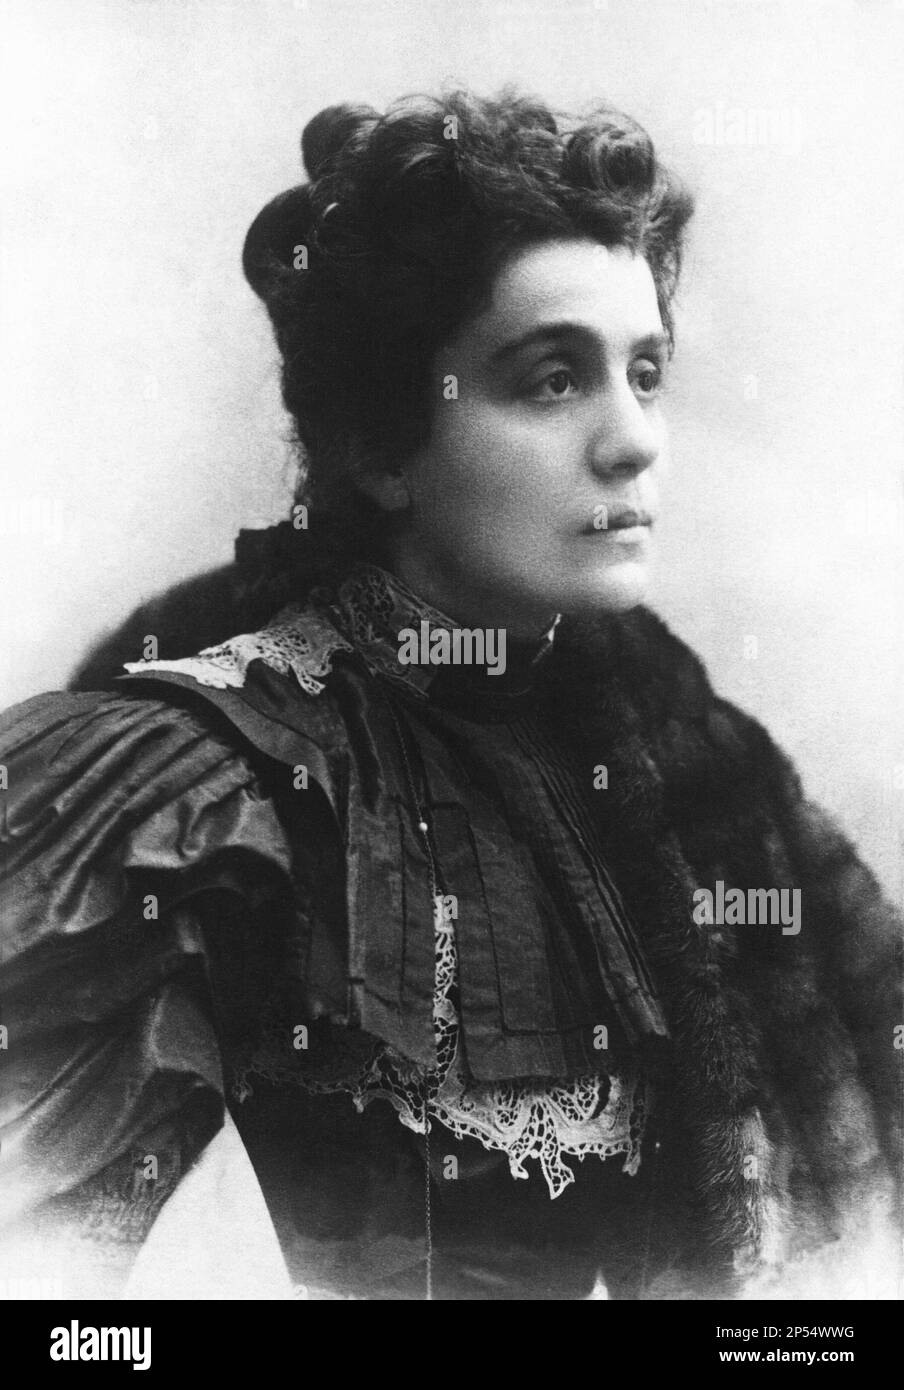 Die gefeierte ELEONORA DUSE ( 1858 - 1924 ), die berühmteste italienische Schauspielerin der Welt, Gefeierte Geliebte des italienischen Dichters GABRIELE D'ANNUNZIO - TEATRO - Theater - ATTRICE - Pelliccia - Fell - Portrait - Rituto - pizzo - Spitze - Chignon - DIVA - DIVINA - attrice teatrale - D' annunzio - Dannunzio ---- Archivio GBB Stockfoto